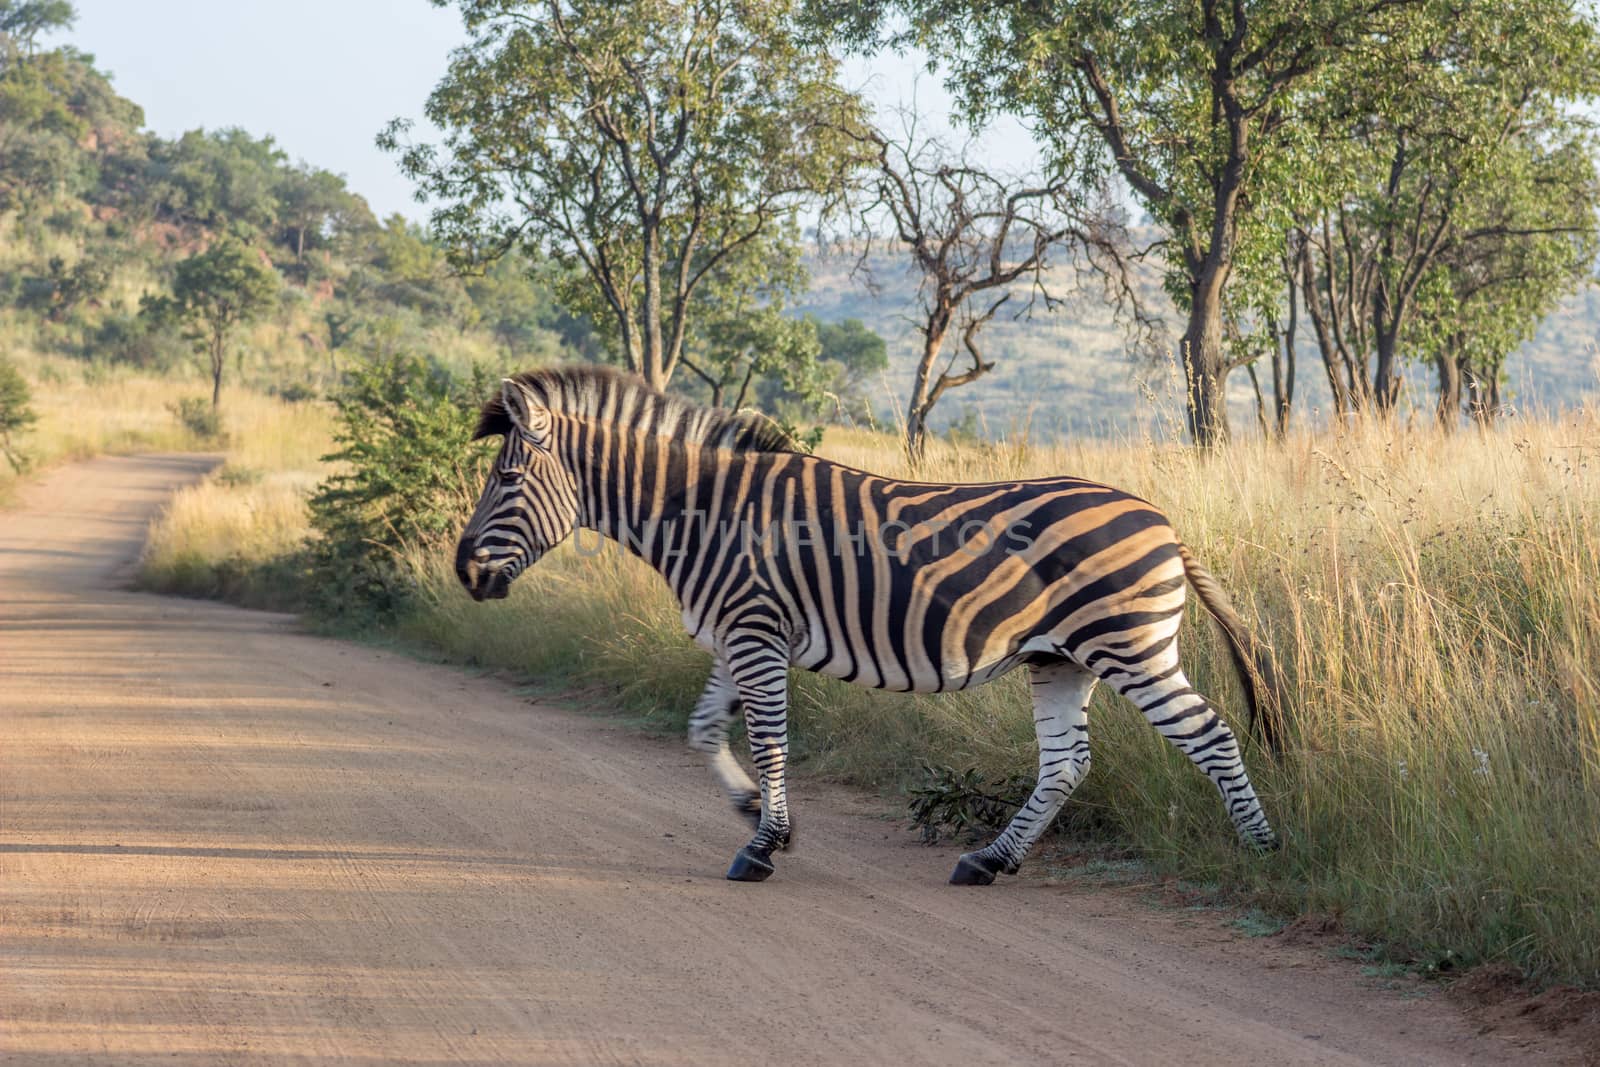 Burchels Zebra crossing a road by RiaanAlbrecht